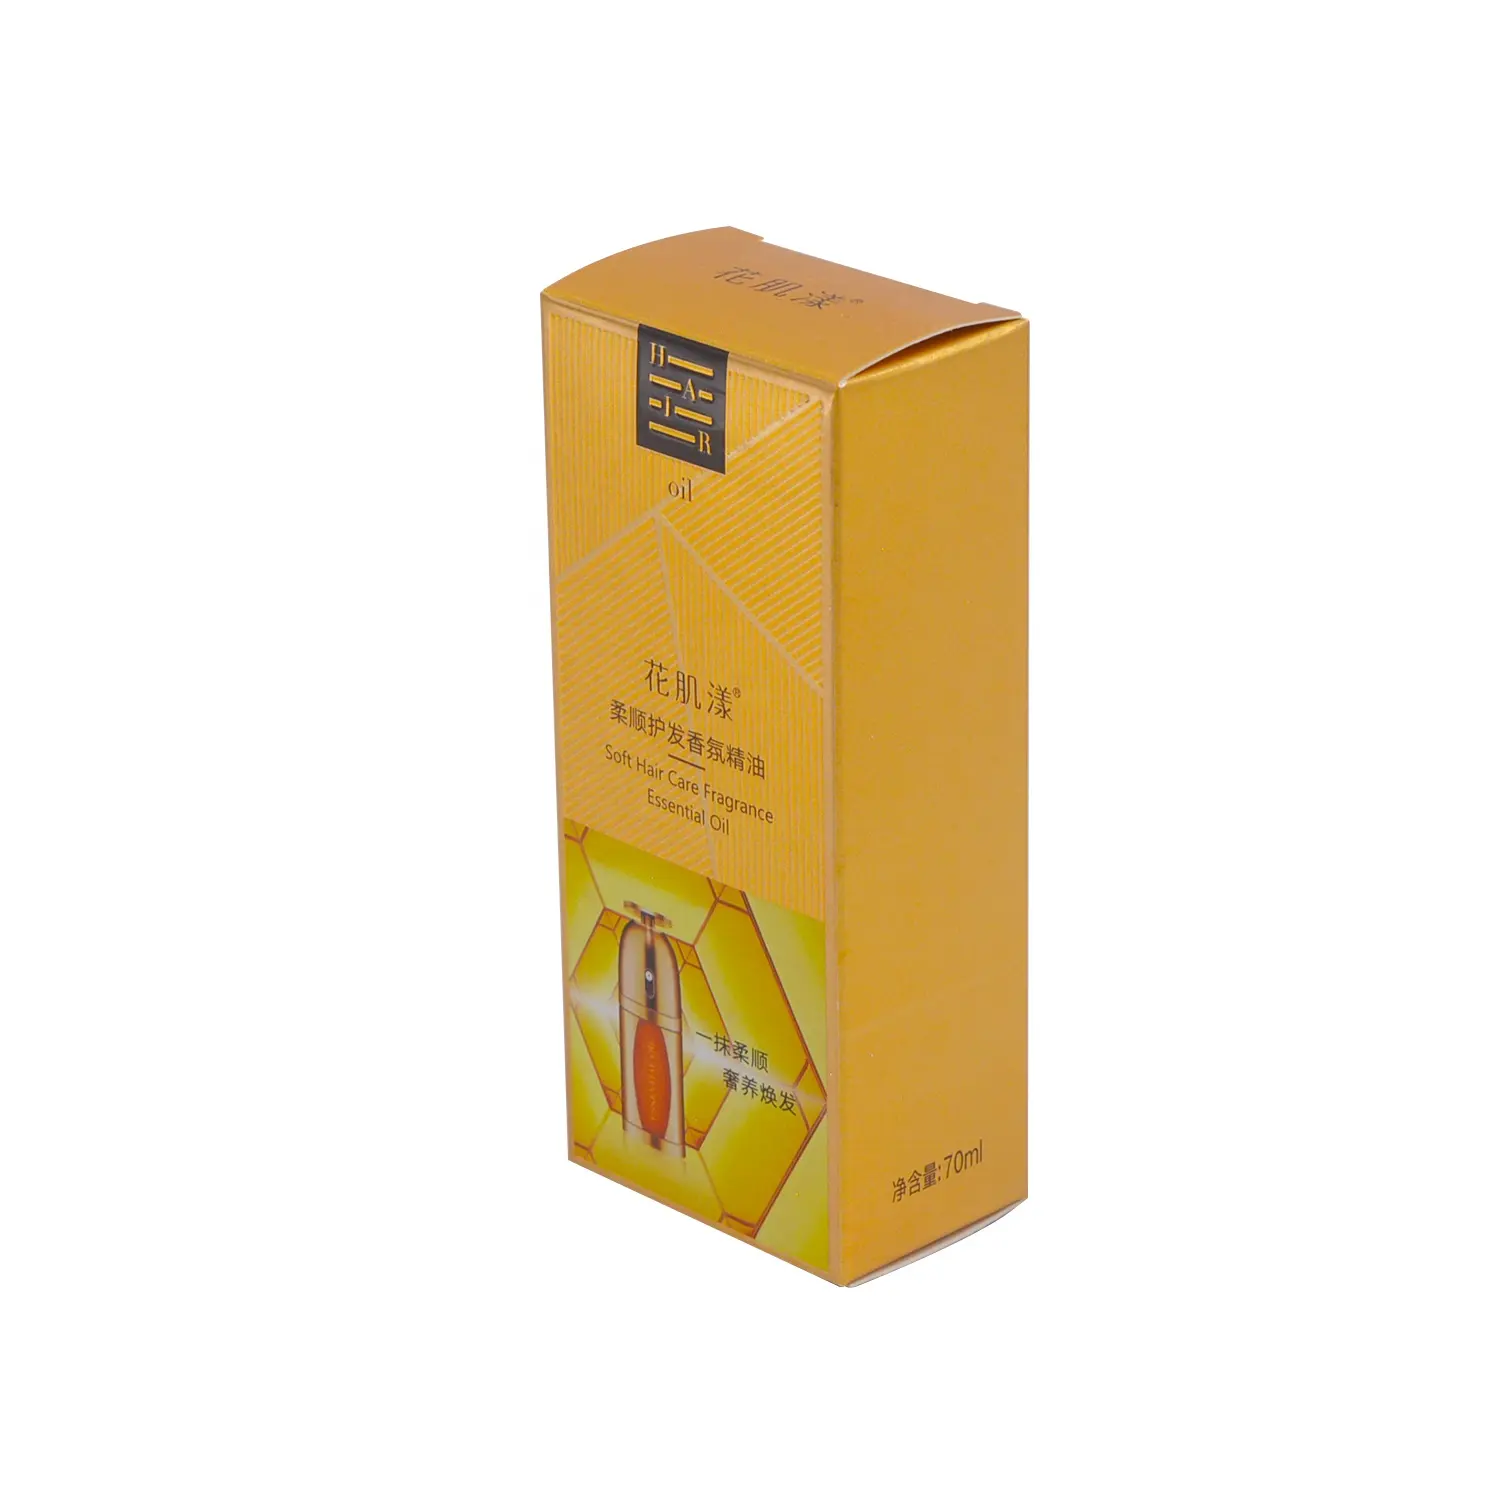 Anpassung Papier Kosmetikbox starrer Karton Hautpflegeprodukte Kosmetikbox zur Verpackung